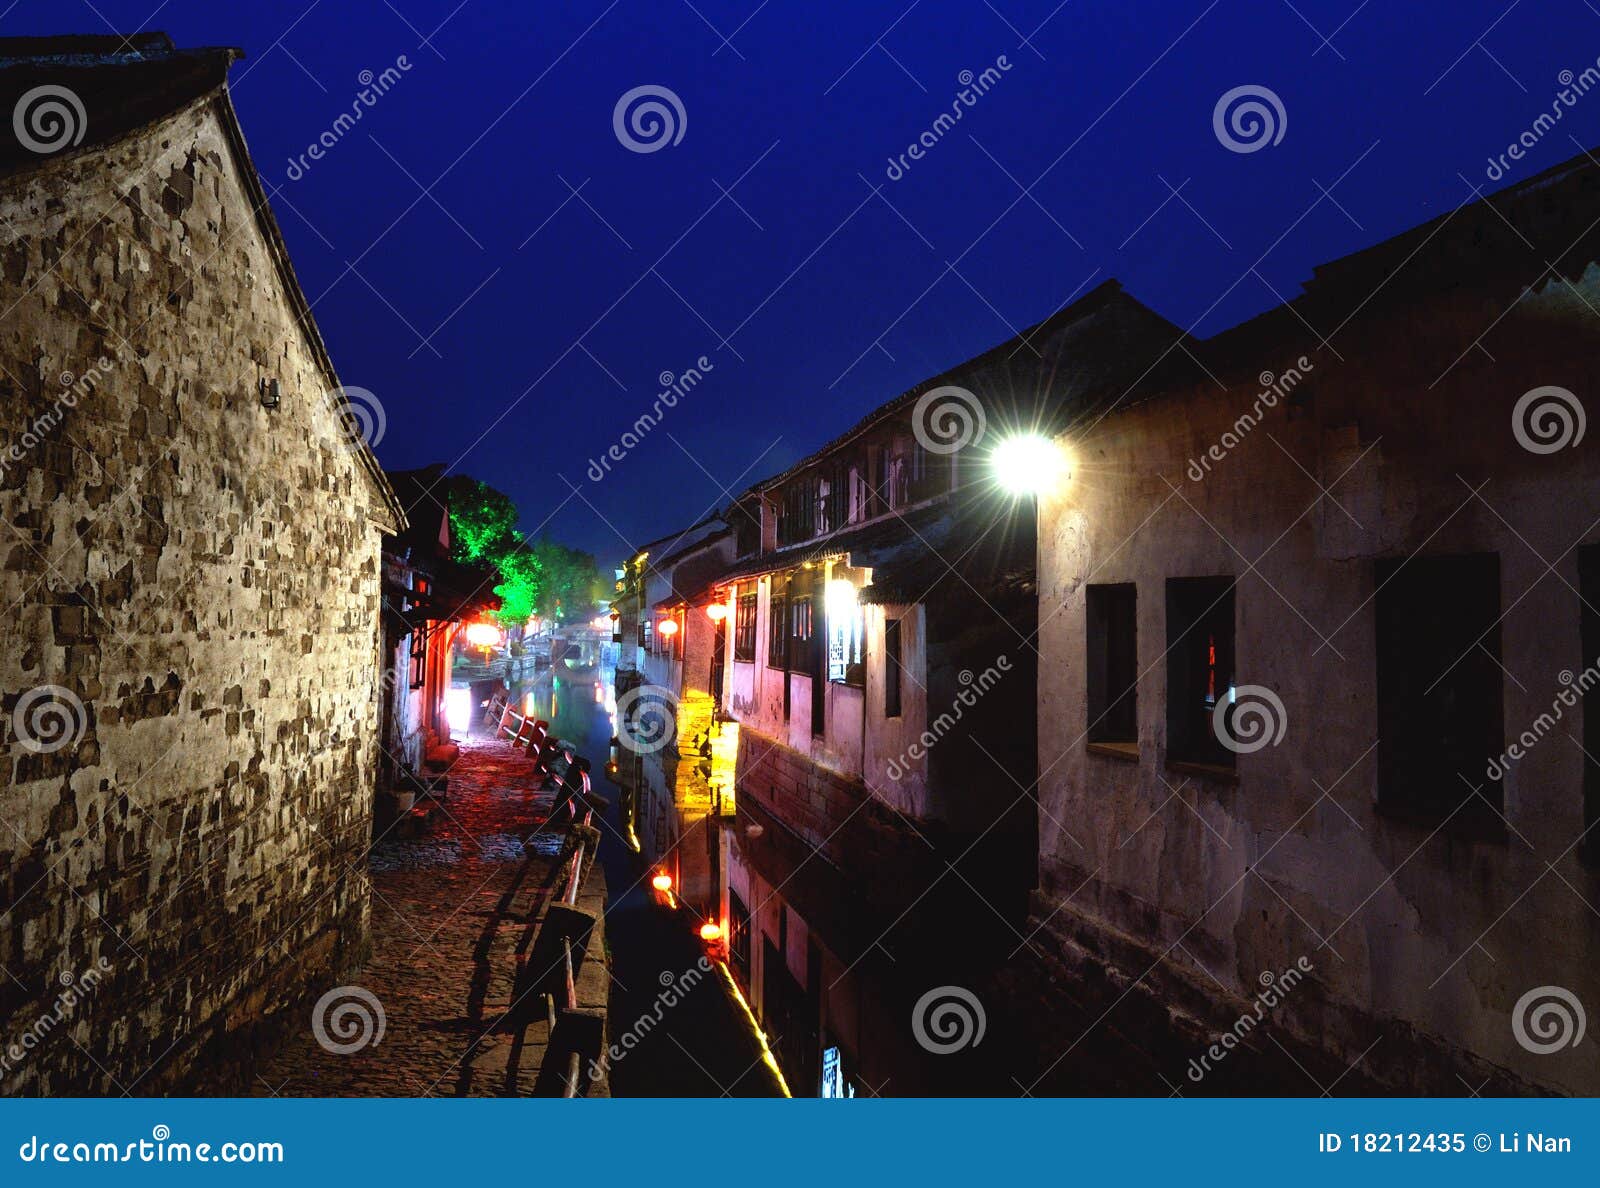 zhouzhuang suzhou ancient water town at night